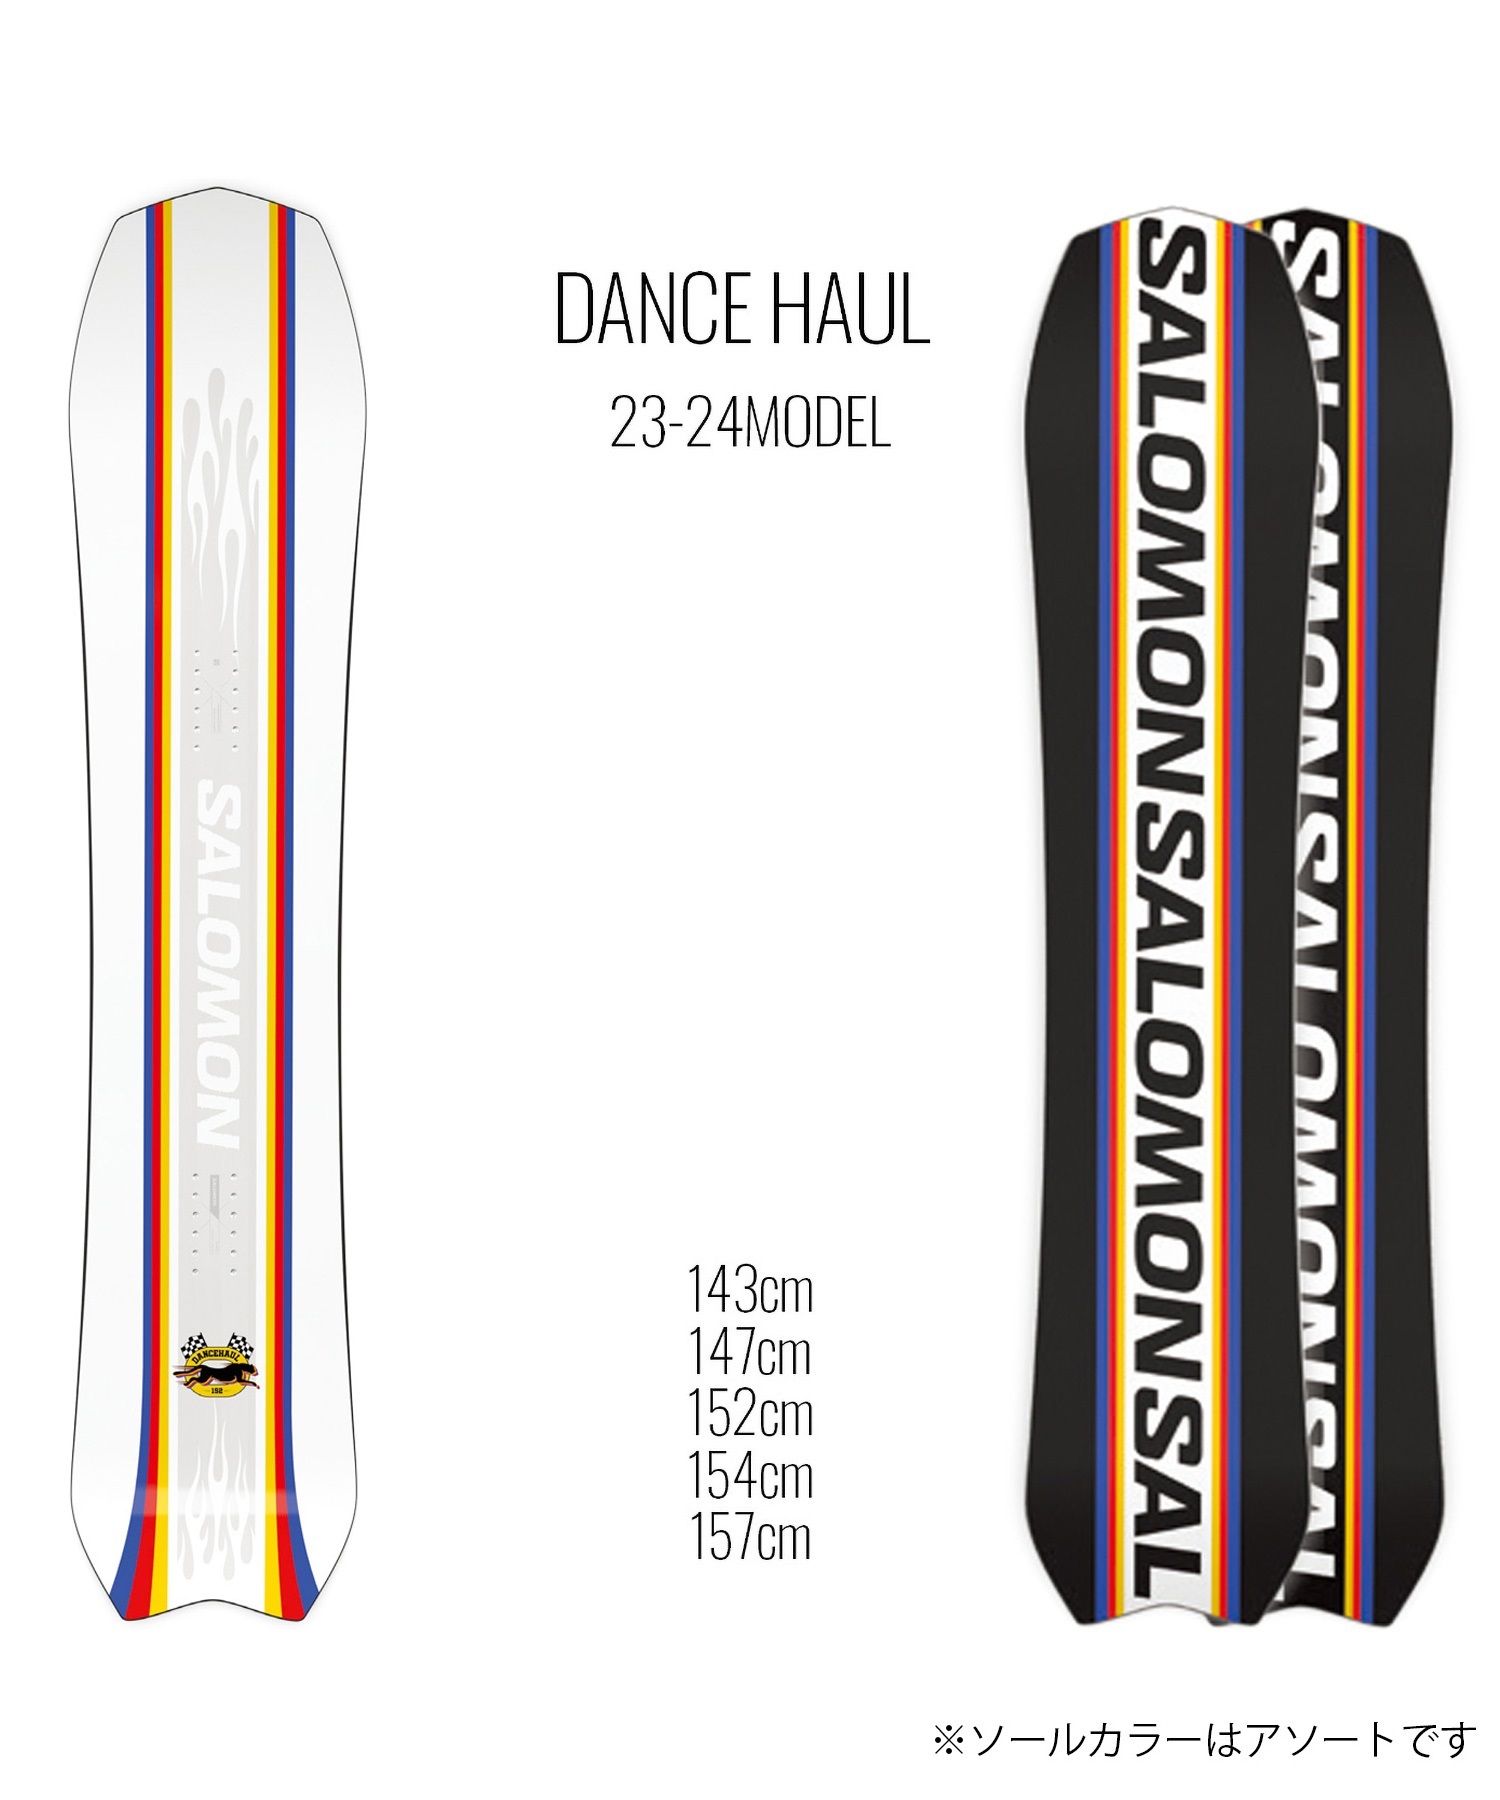 スノーボード 板 ユニセックス SALOMON サロモン DANCE HAUL  23-24モデル ムラサキスポーツ KK C2(DANCEHAUL-143cm)